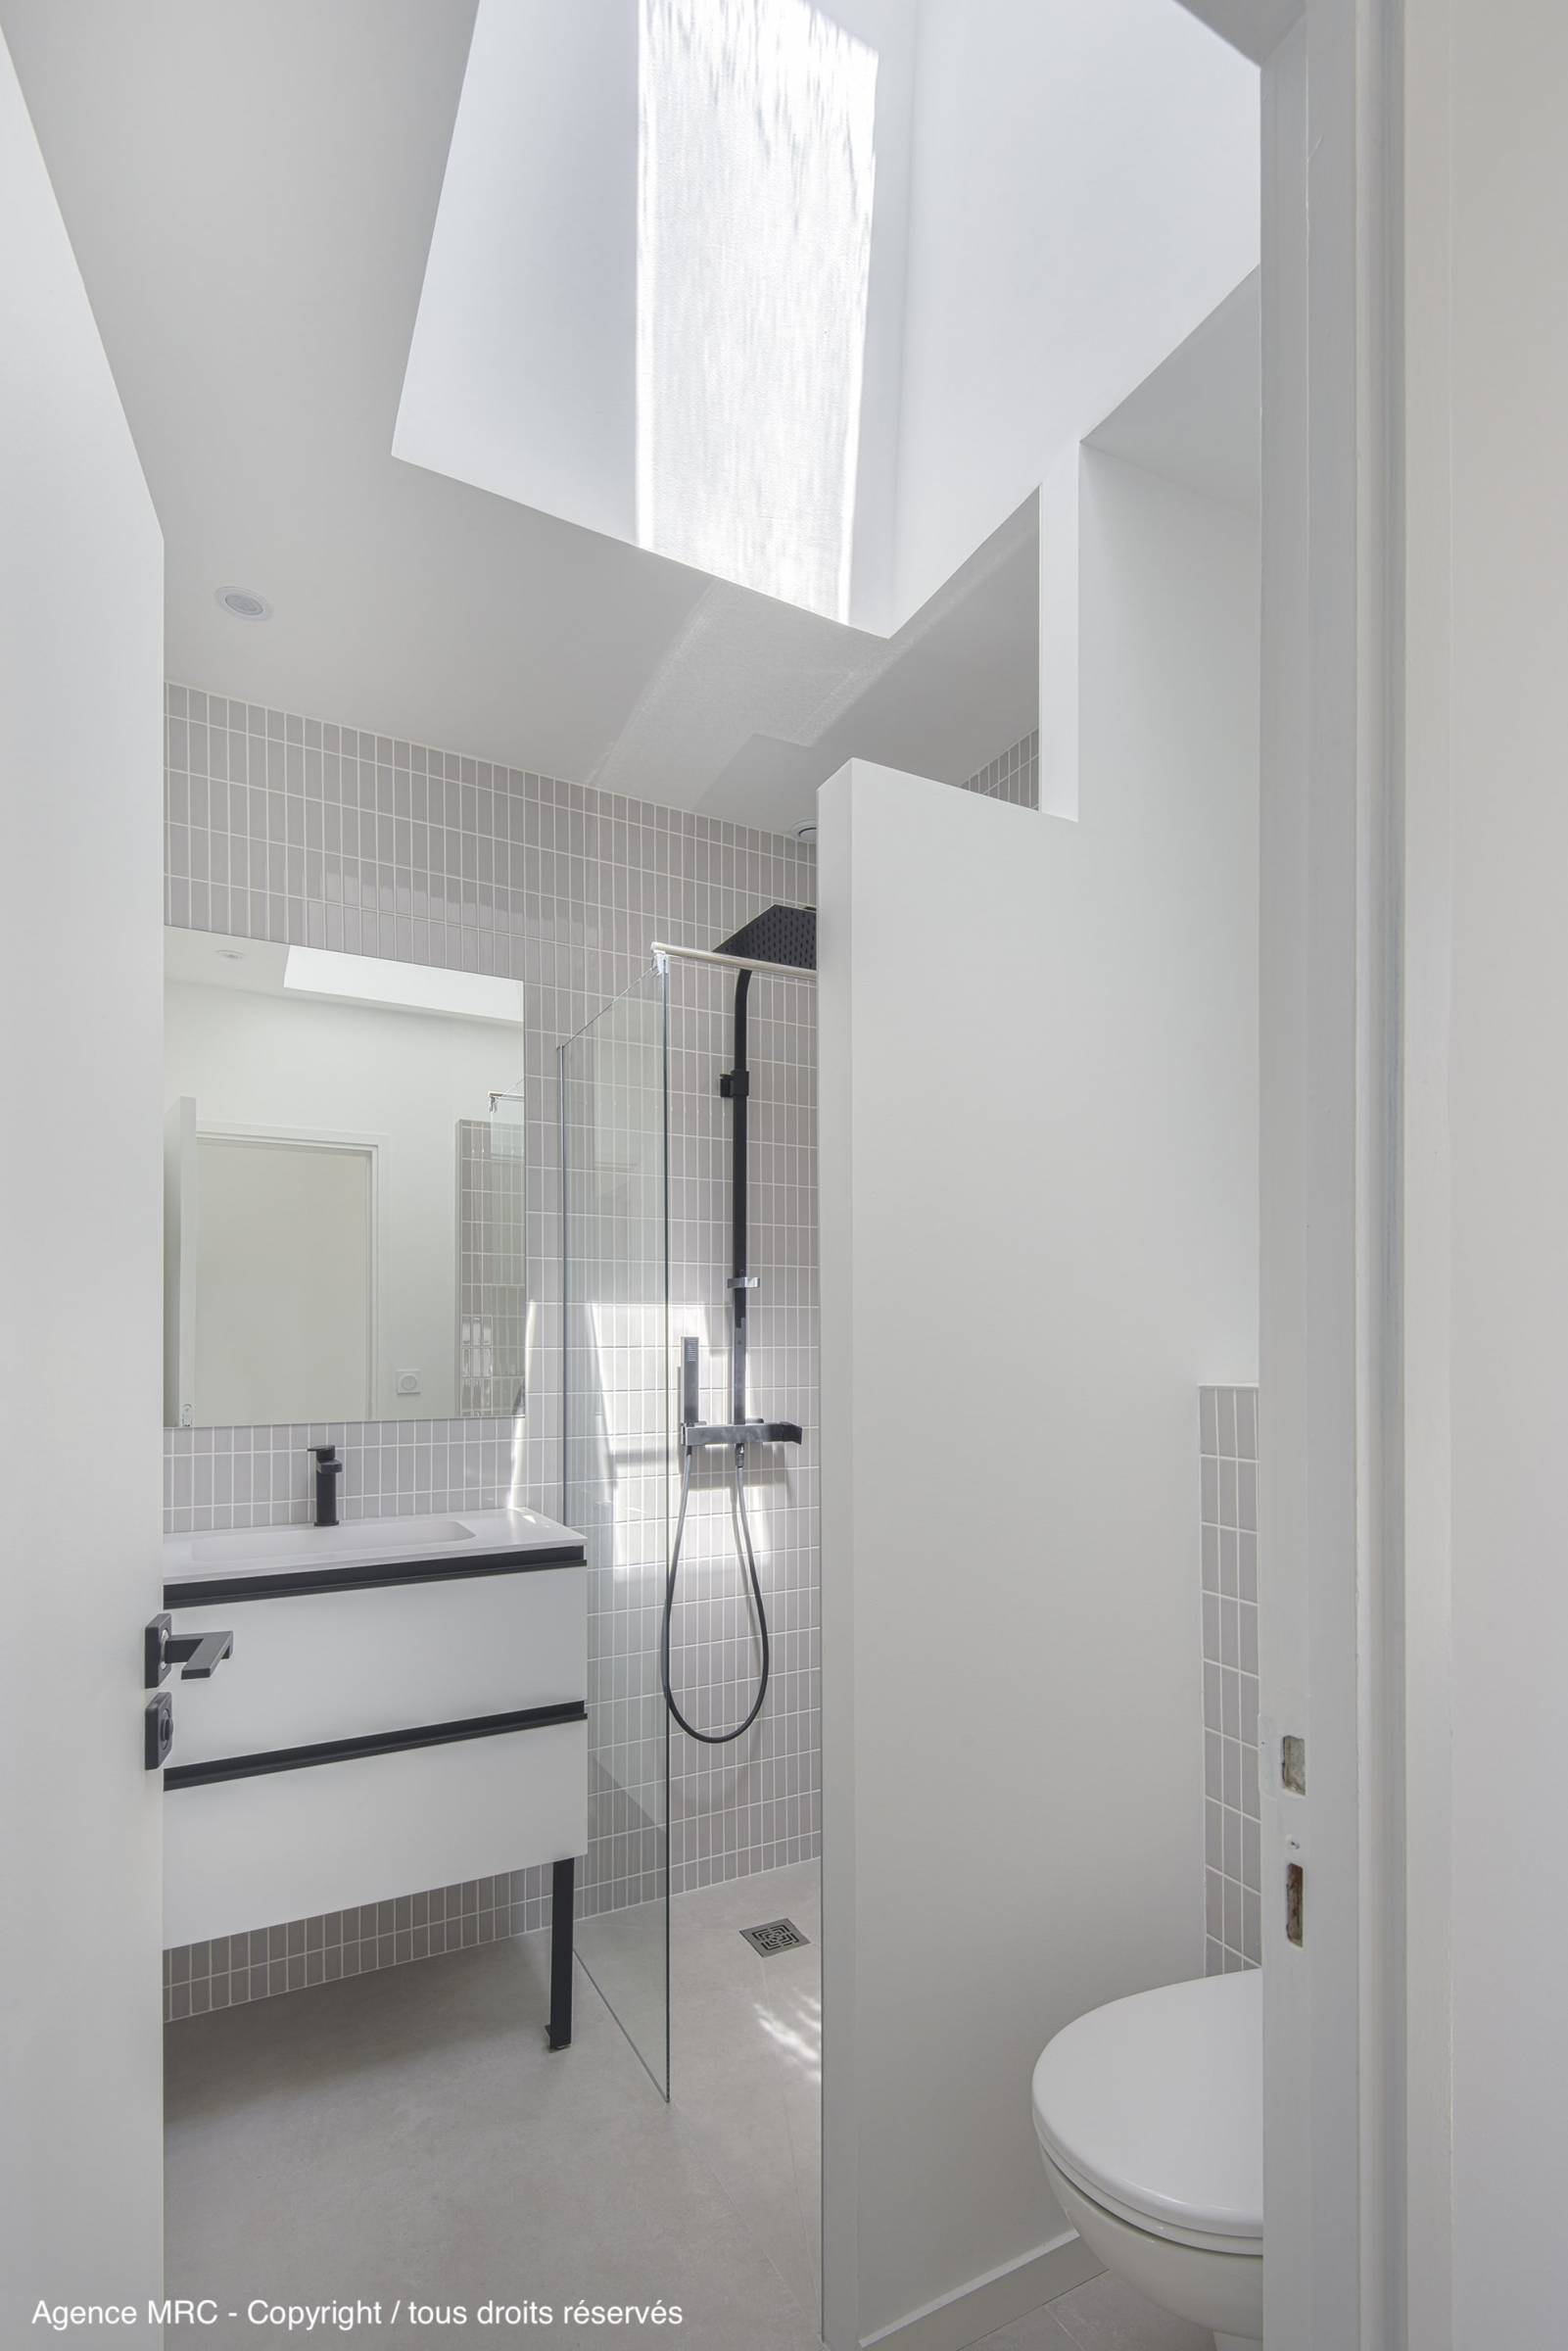 Architecte d'intérieur Marseille 13007 : aménagement salle de bain de style épuré élégante et sur mesure pour travaux de rénovation maison